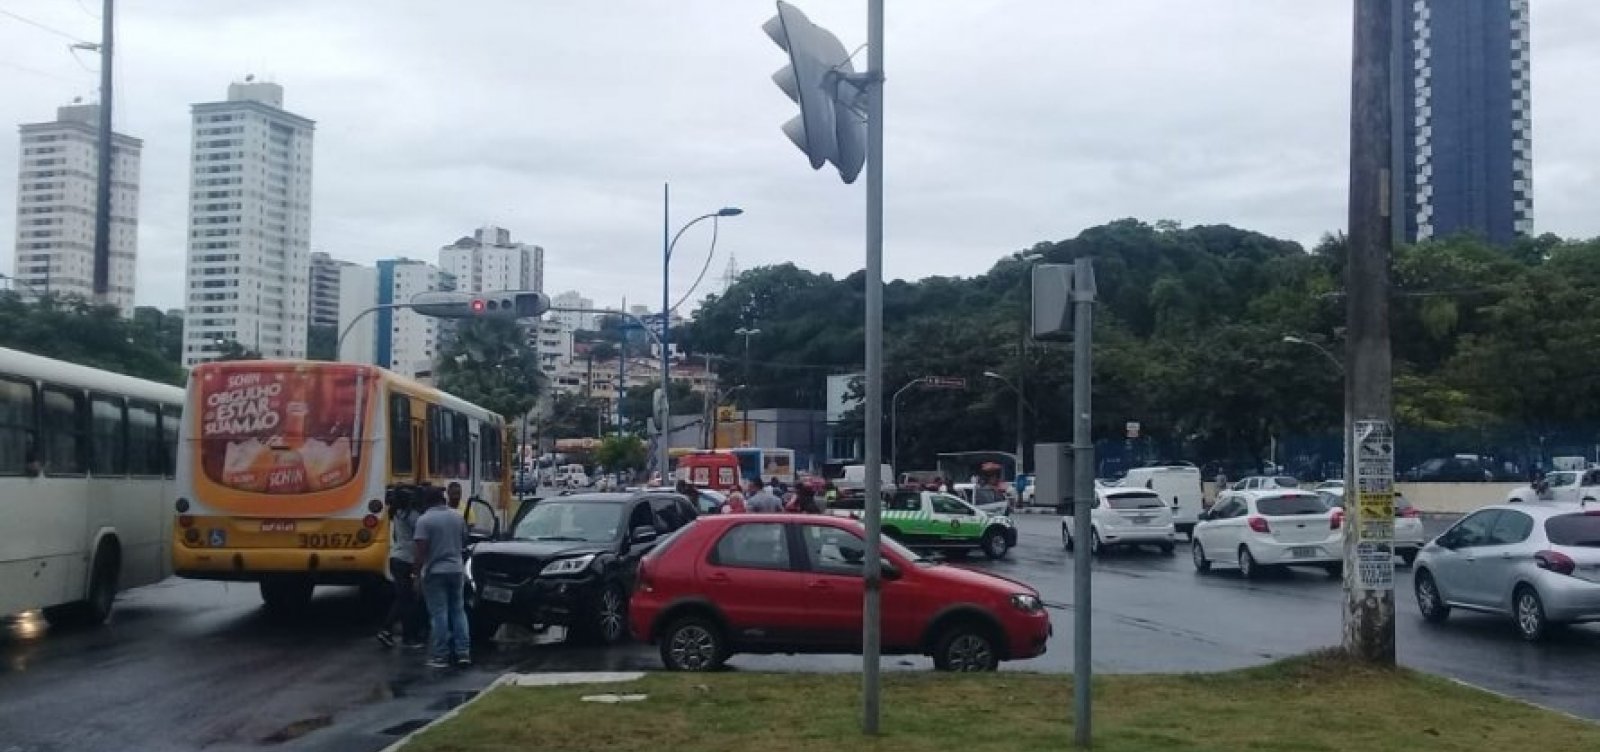 Assaltantes em fuga batem em carros e trocam tiros com policiais na Av. Vasco da Gama